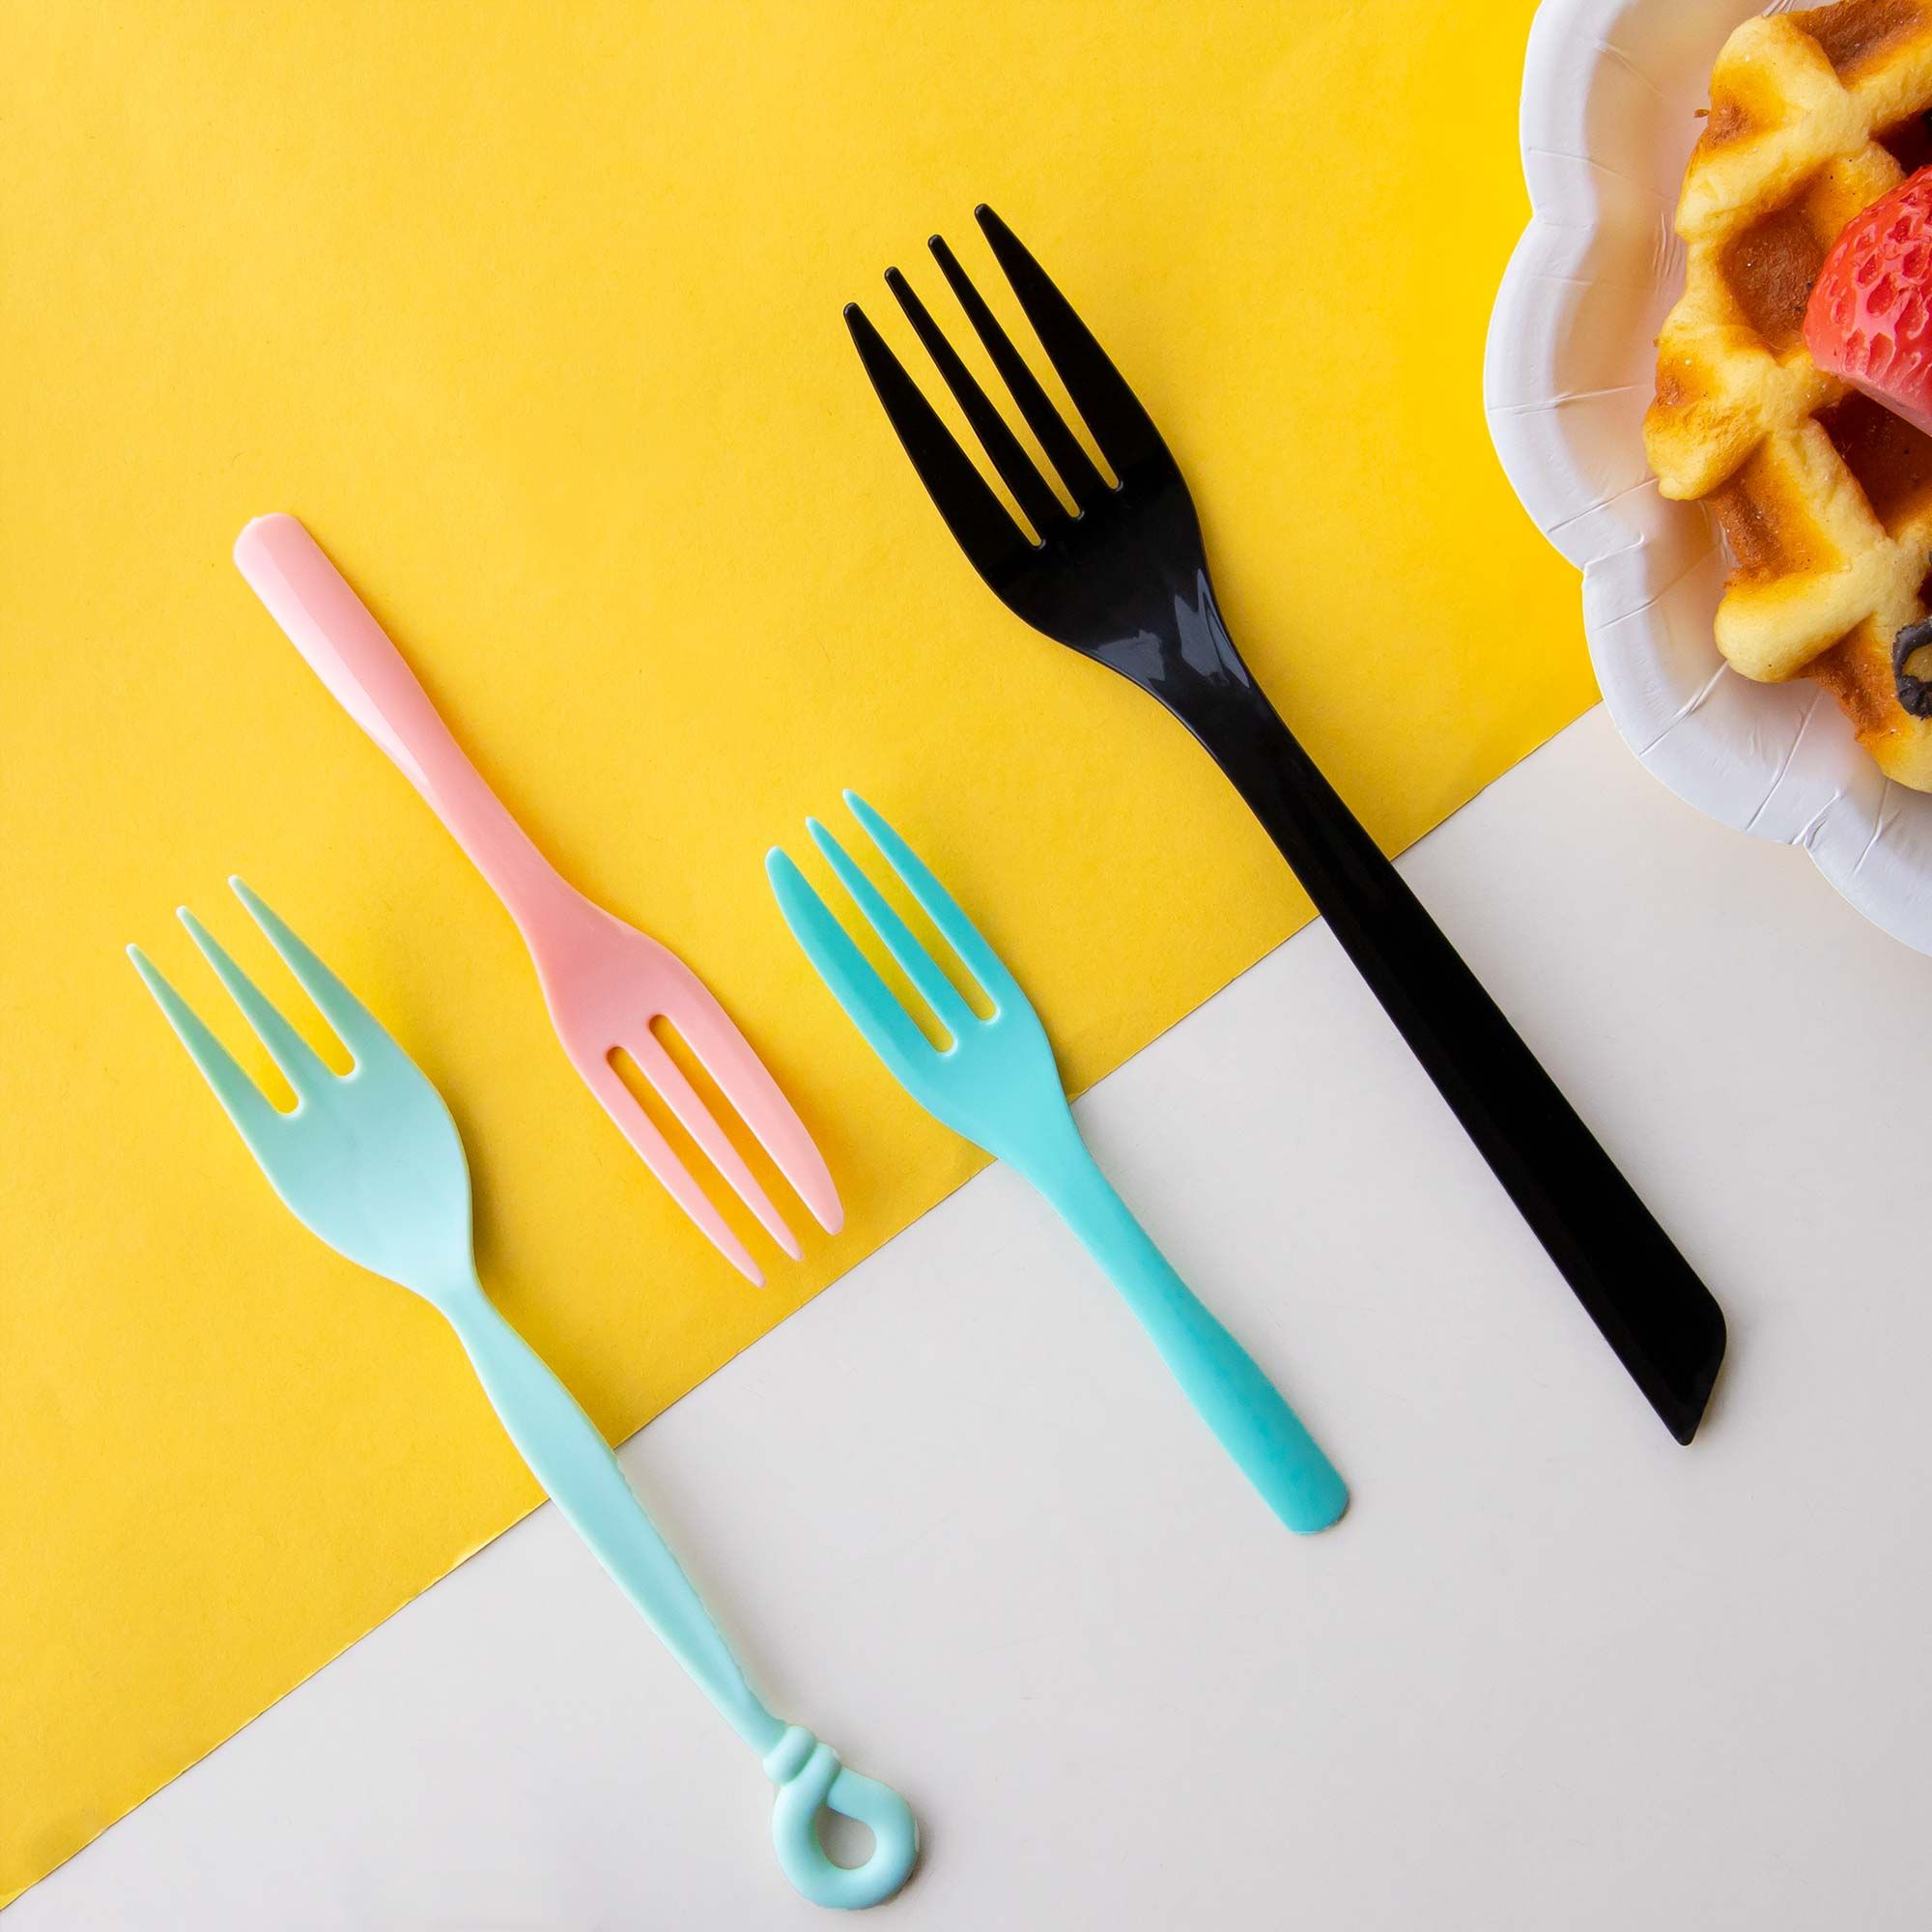 Tenedor de Plástico - Tenedores desechables, tenedores coloridos